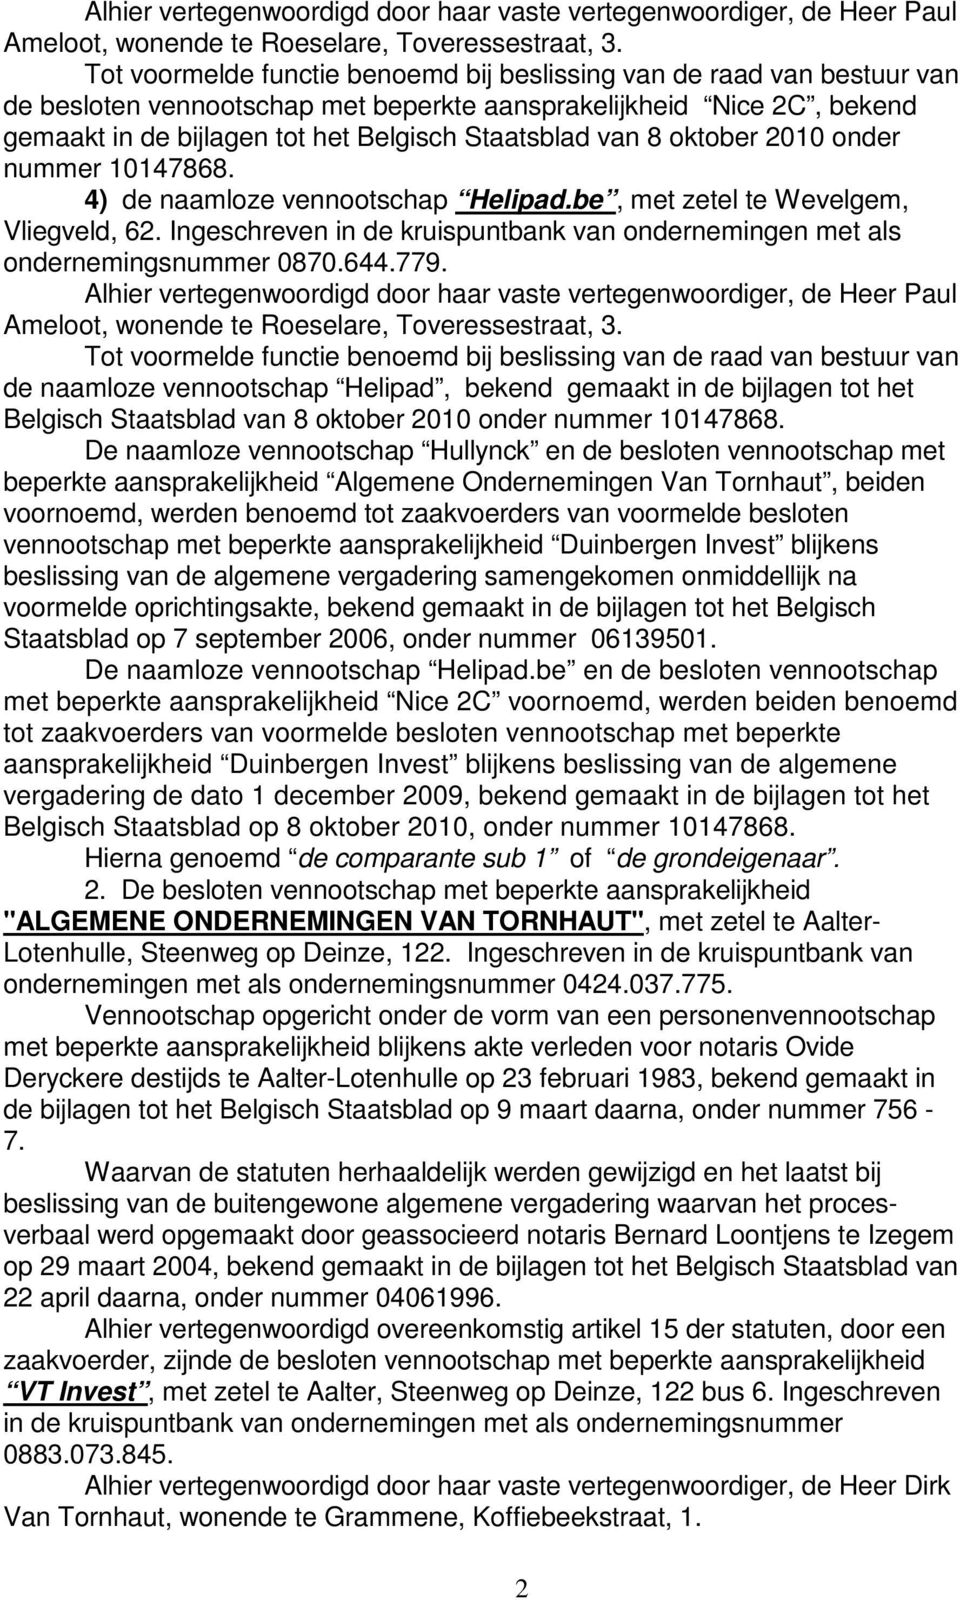 8 oktober 2010 onder nummer 10147868. 4) de naamloze vennootschap Helipad.be, met zetel te Wevelgem, Vliegveld, 62. Ingeschreven in de kruispuntbank van ondernemingen met als ondernemingsnummer 0870.